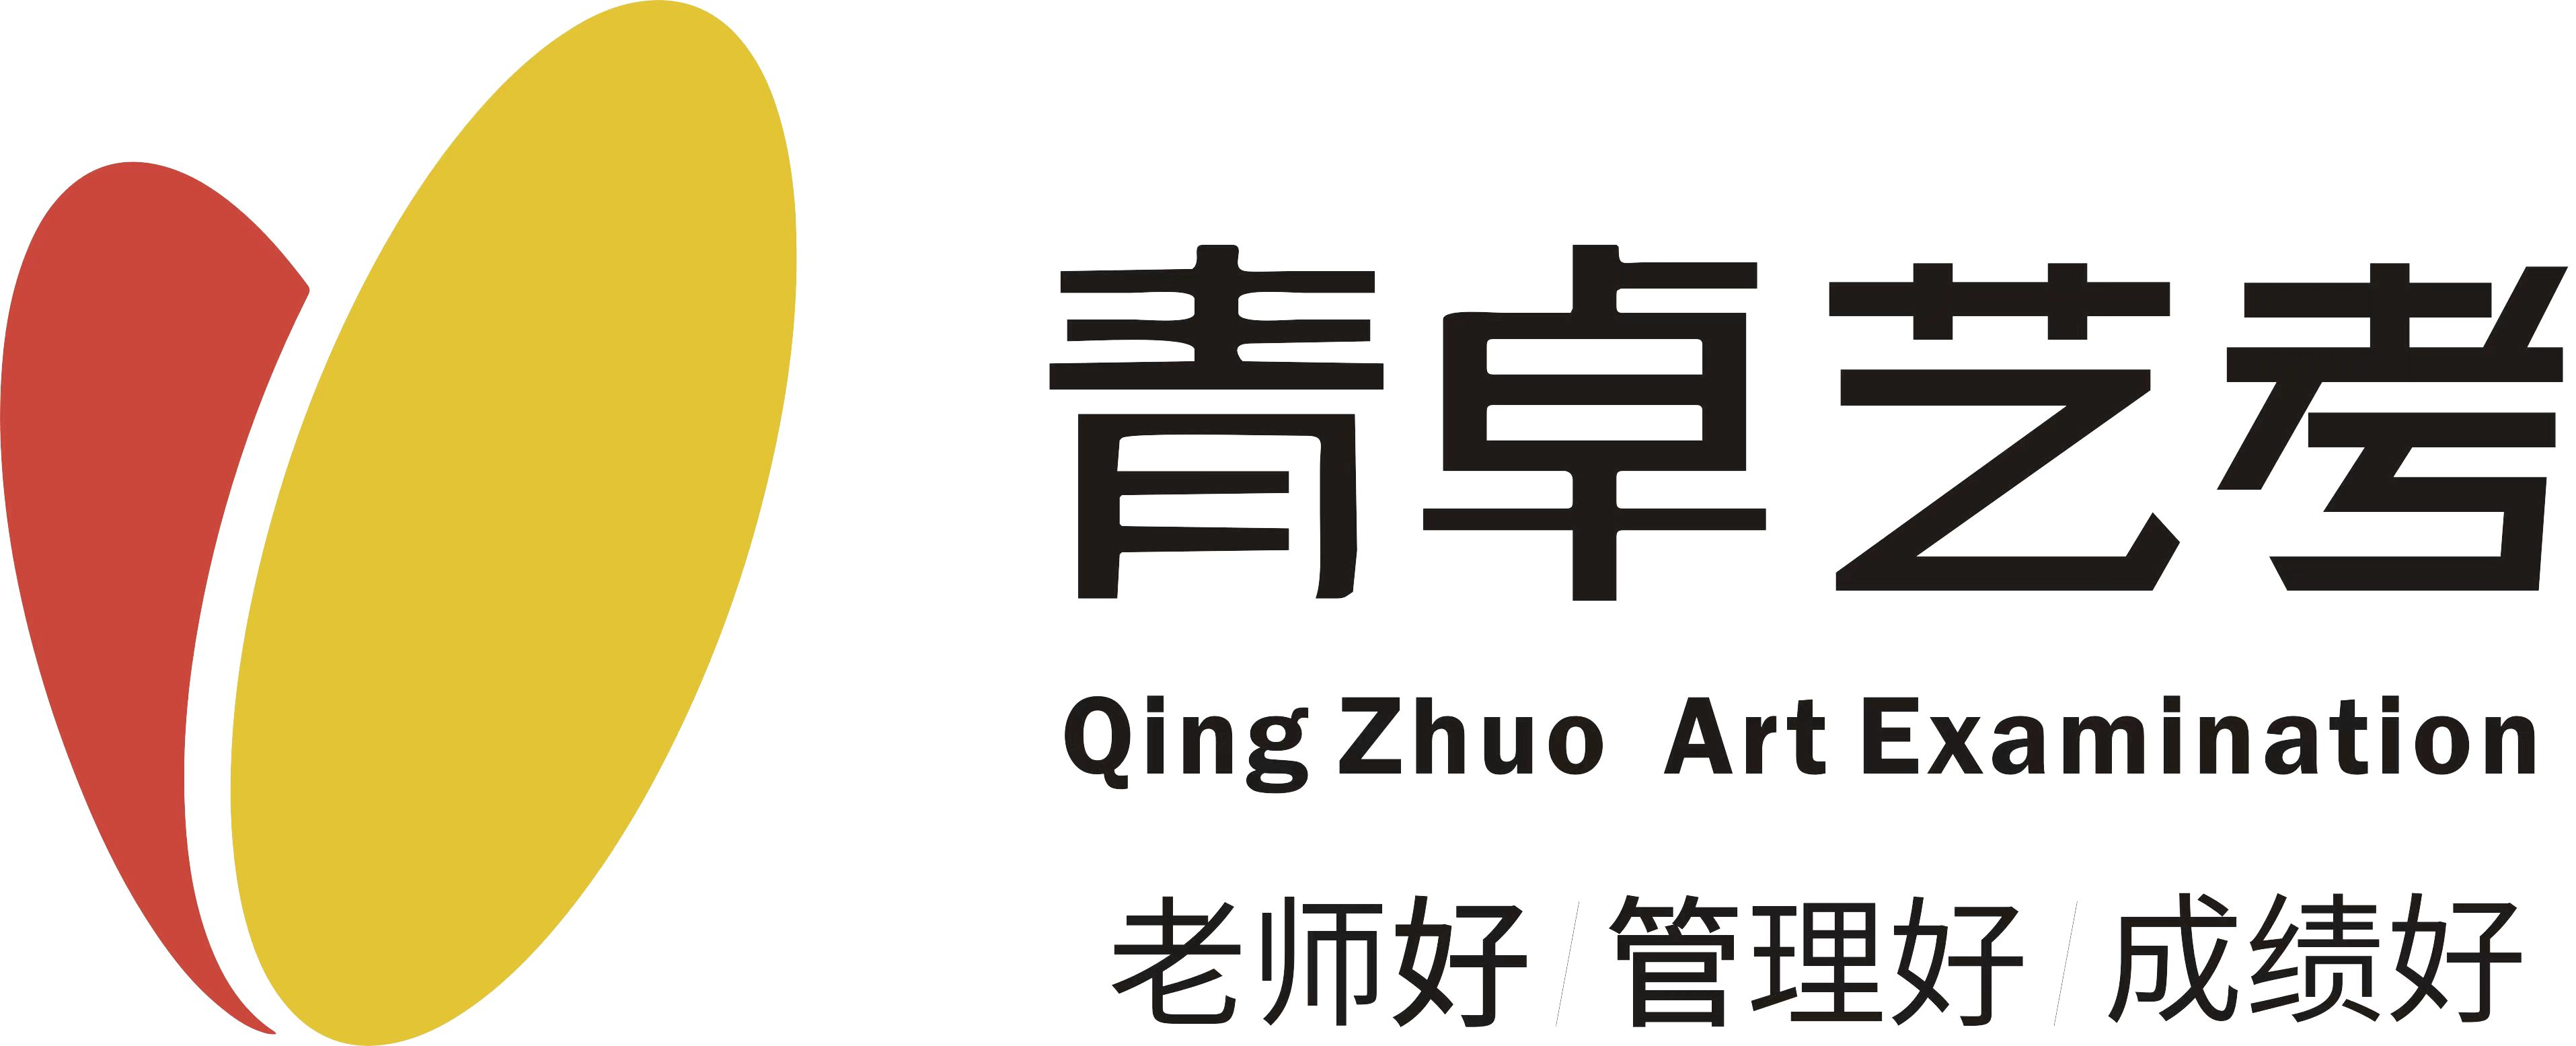 西安艺考培训,陕西画室,西安美术学院——西安青卓艺术文化学校